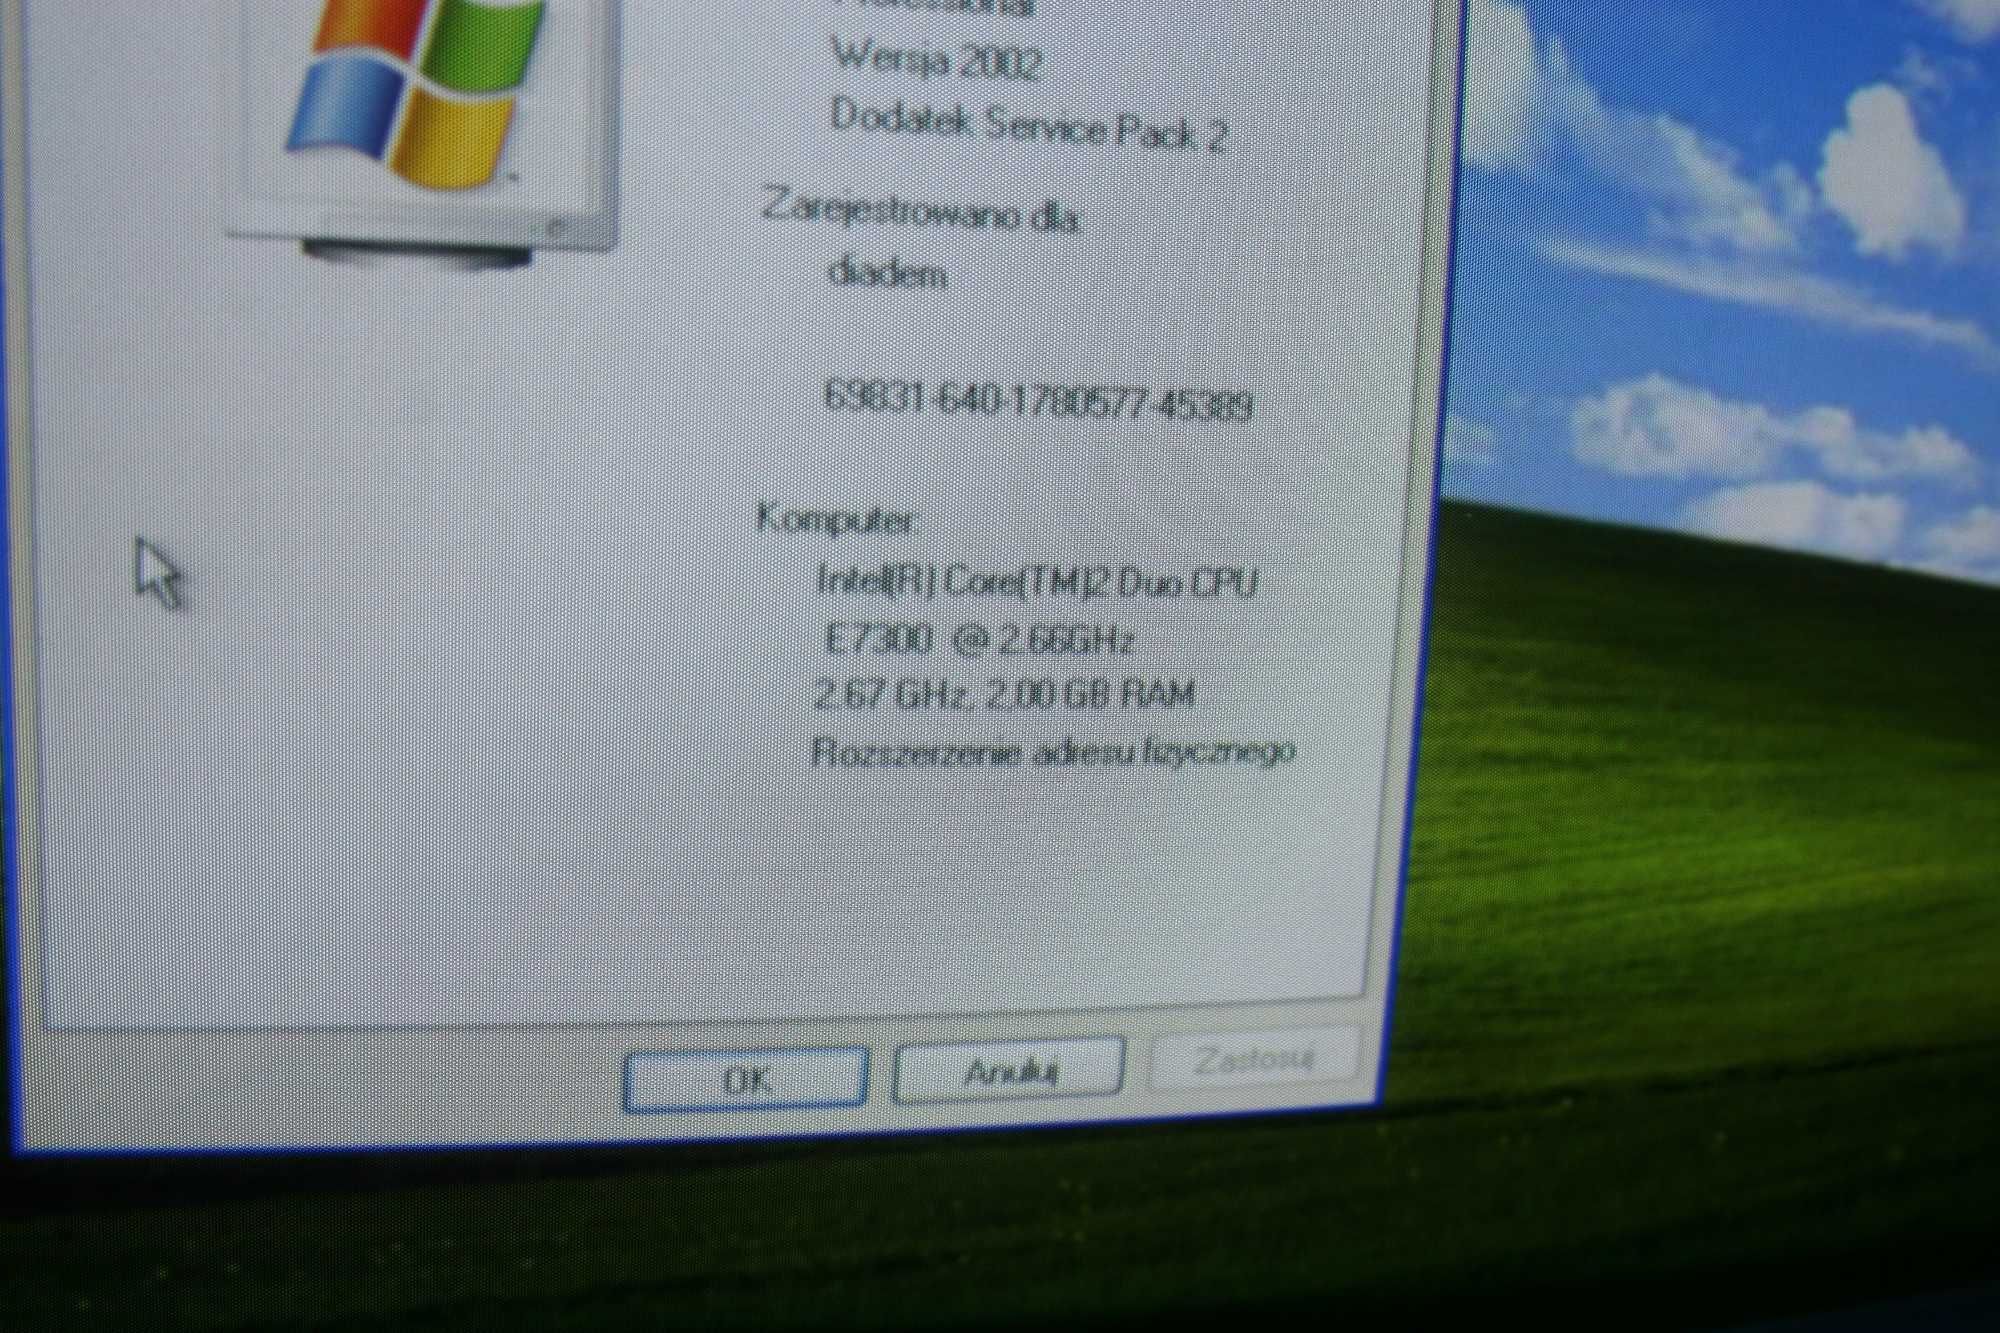 Niewielki Komputer stacjonarny Windows XP, retrogaming